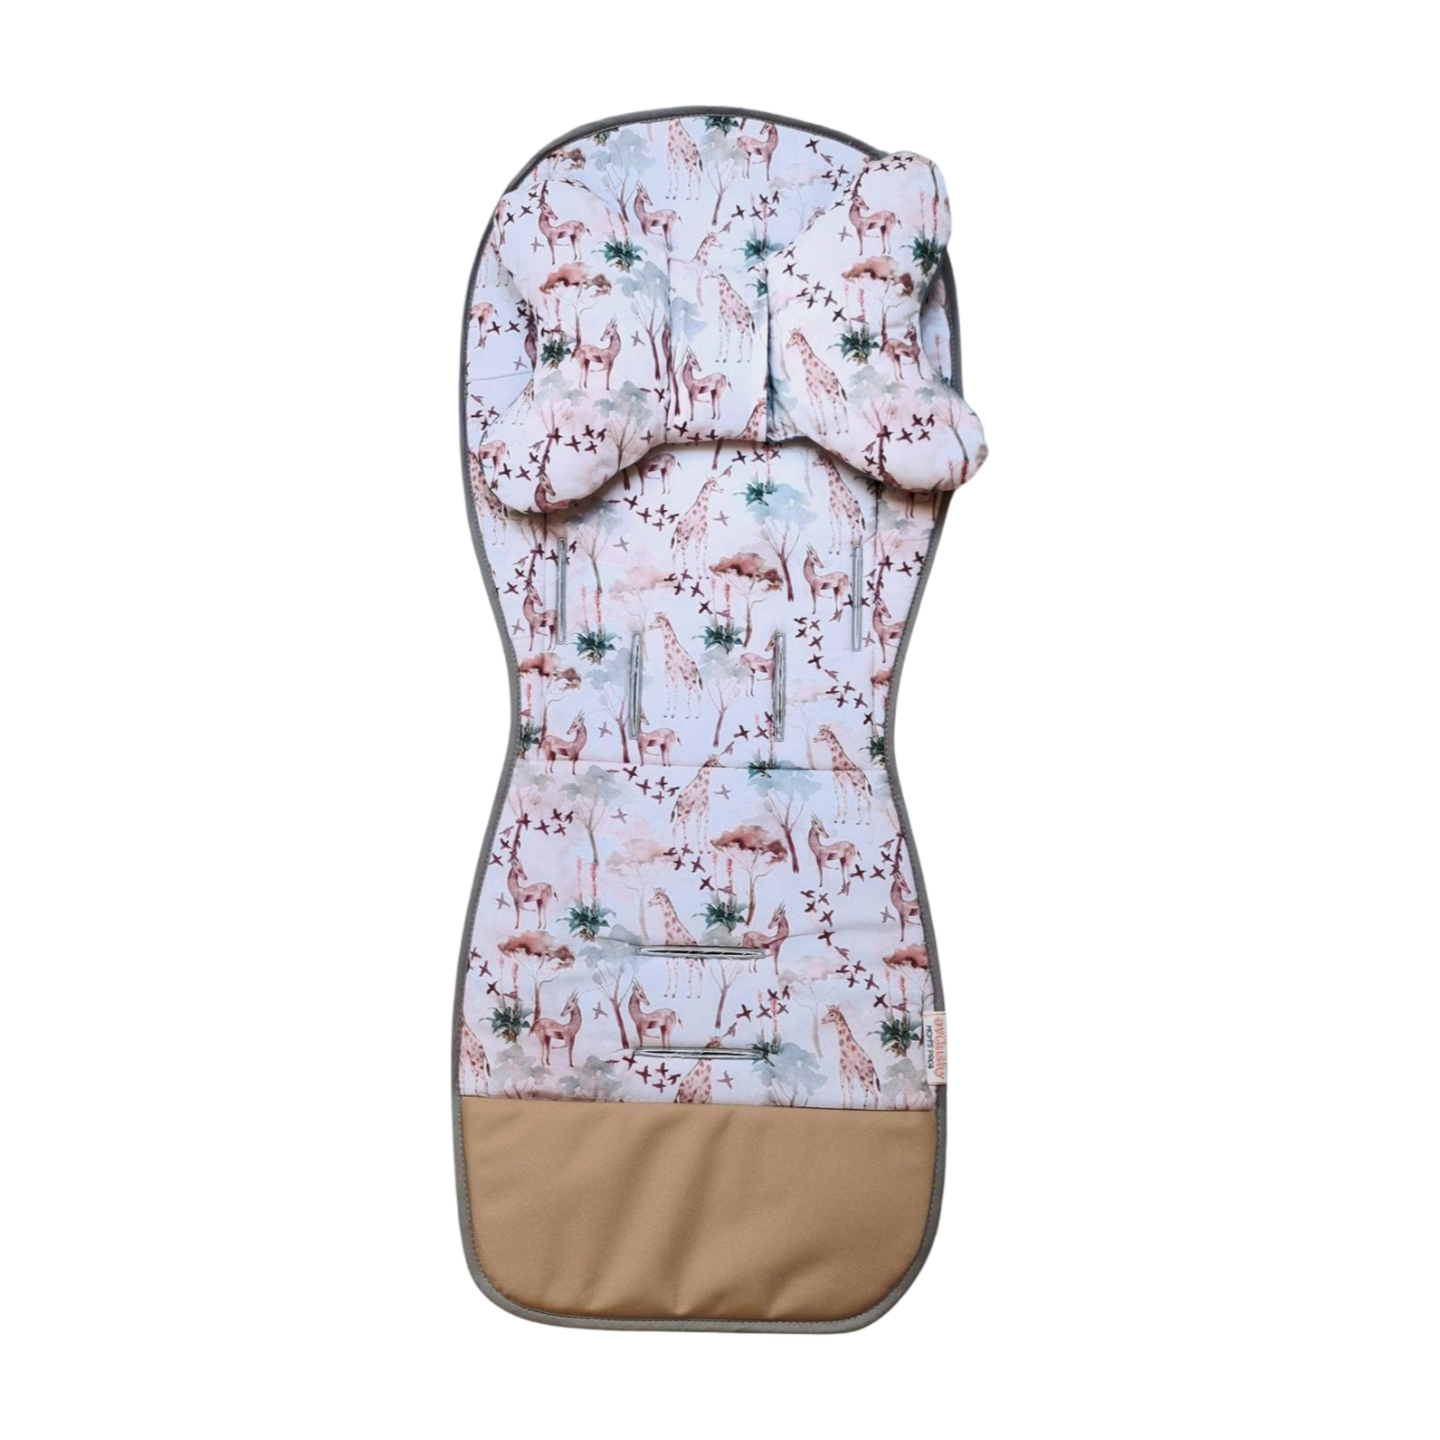 stroller liner padded insert for pram jungle giraffe pattern soft velvet evCushy